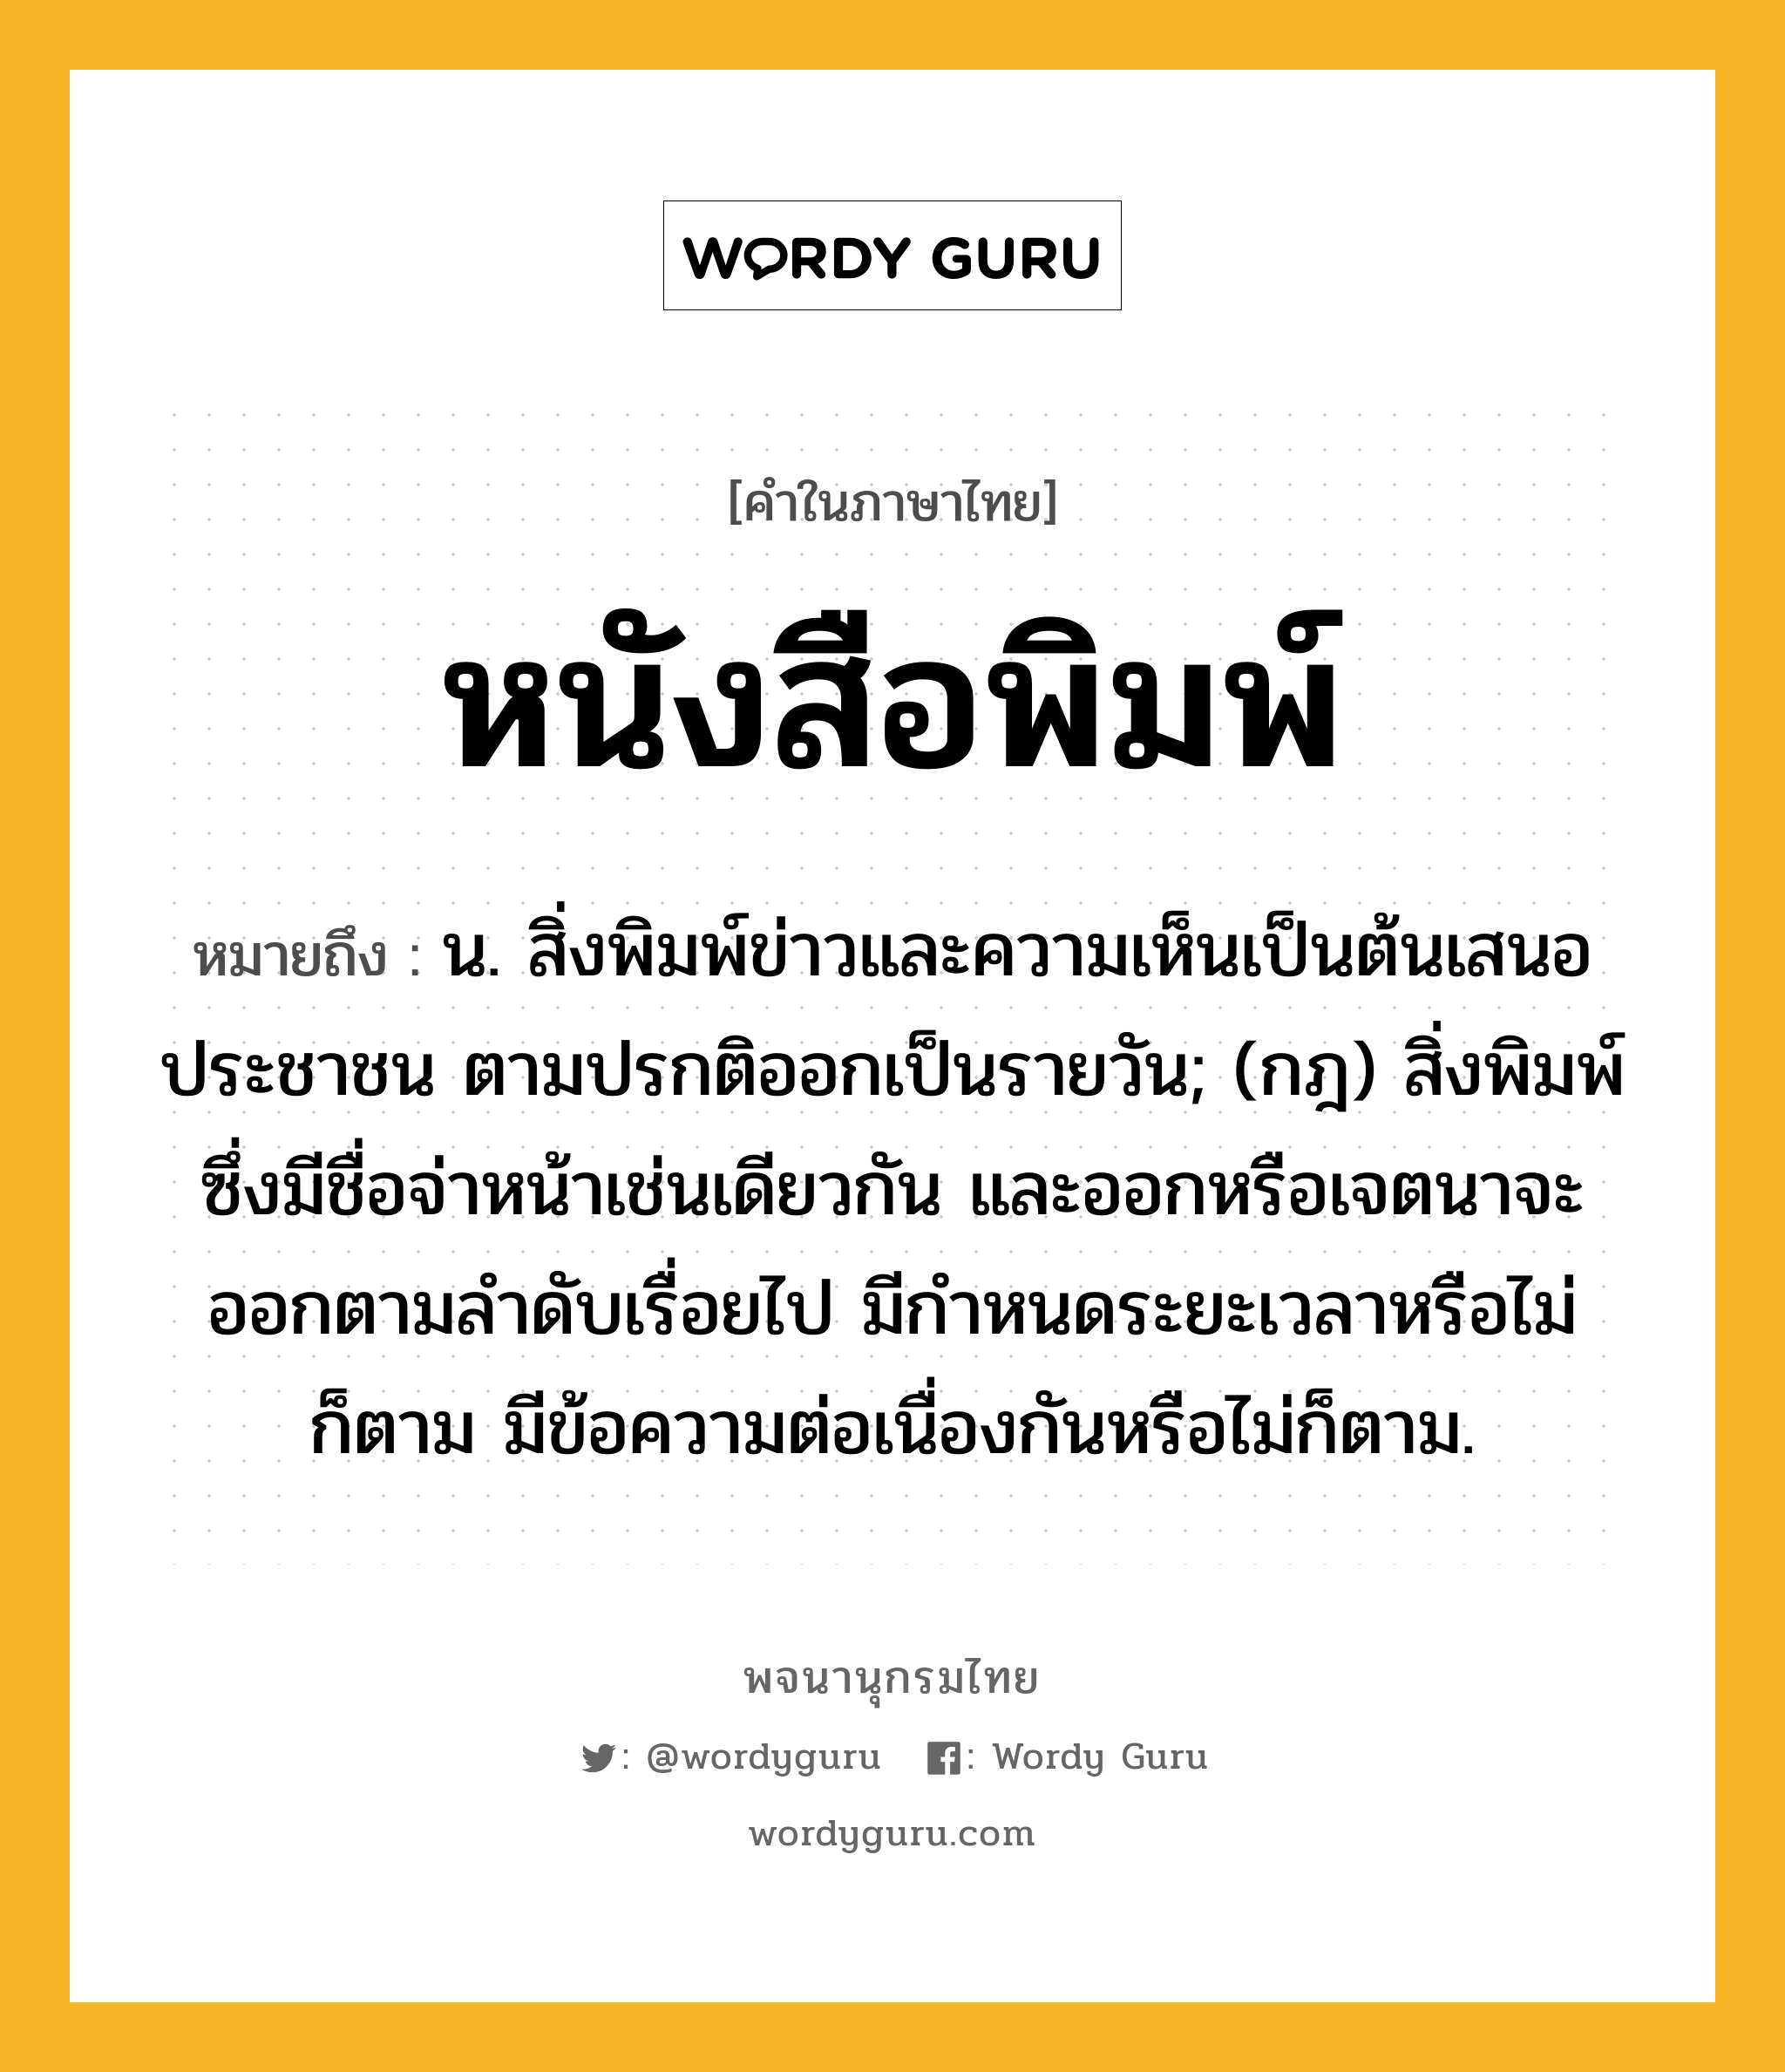 หนังสือพิมพ์ หมายถึงอะไร?, คำในภาษาไทย หนังสือพิมพ์ หมายถึง น. สิ่งพิมพ์ข่าวและความเห็นเป็นต้นเสนอประชาชน ตามปรกติออกเป็นรายวัน; (กฎ) สิ่งพิมพ์ซึ่งมีชื่อจ่าหน้าเช่นเดียวกัน และออกหรือเจตนาจะออกตามลําดับเรื่อยไป มีกําหนดระยะเวลาหรือไม่ก็ตาม มีข้อความต่อเนื่องกันหรือไม่ก็ตาม.